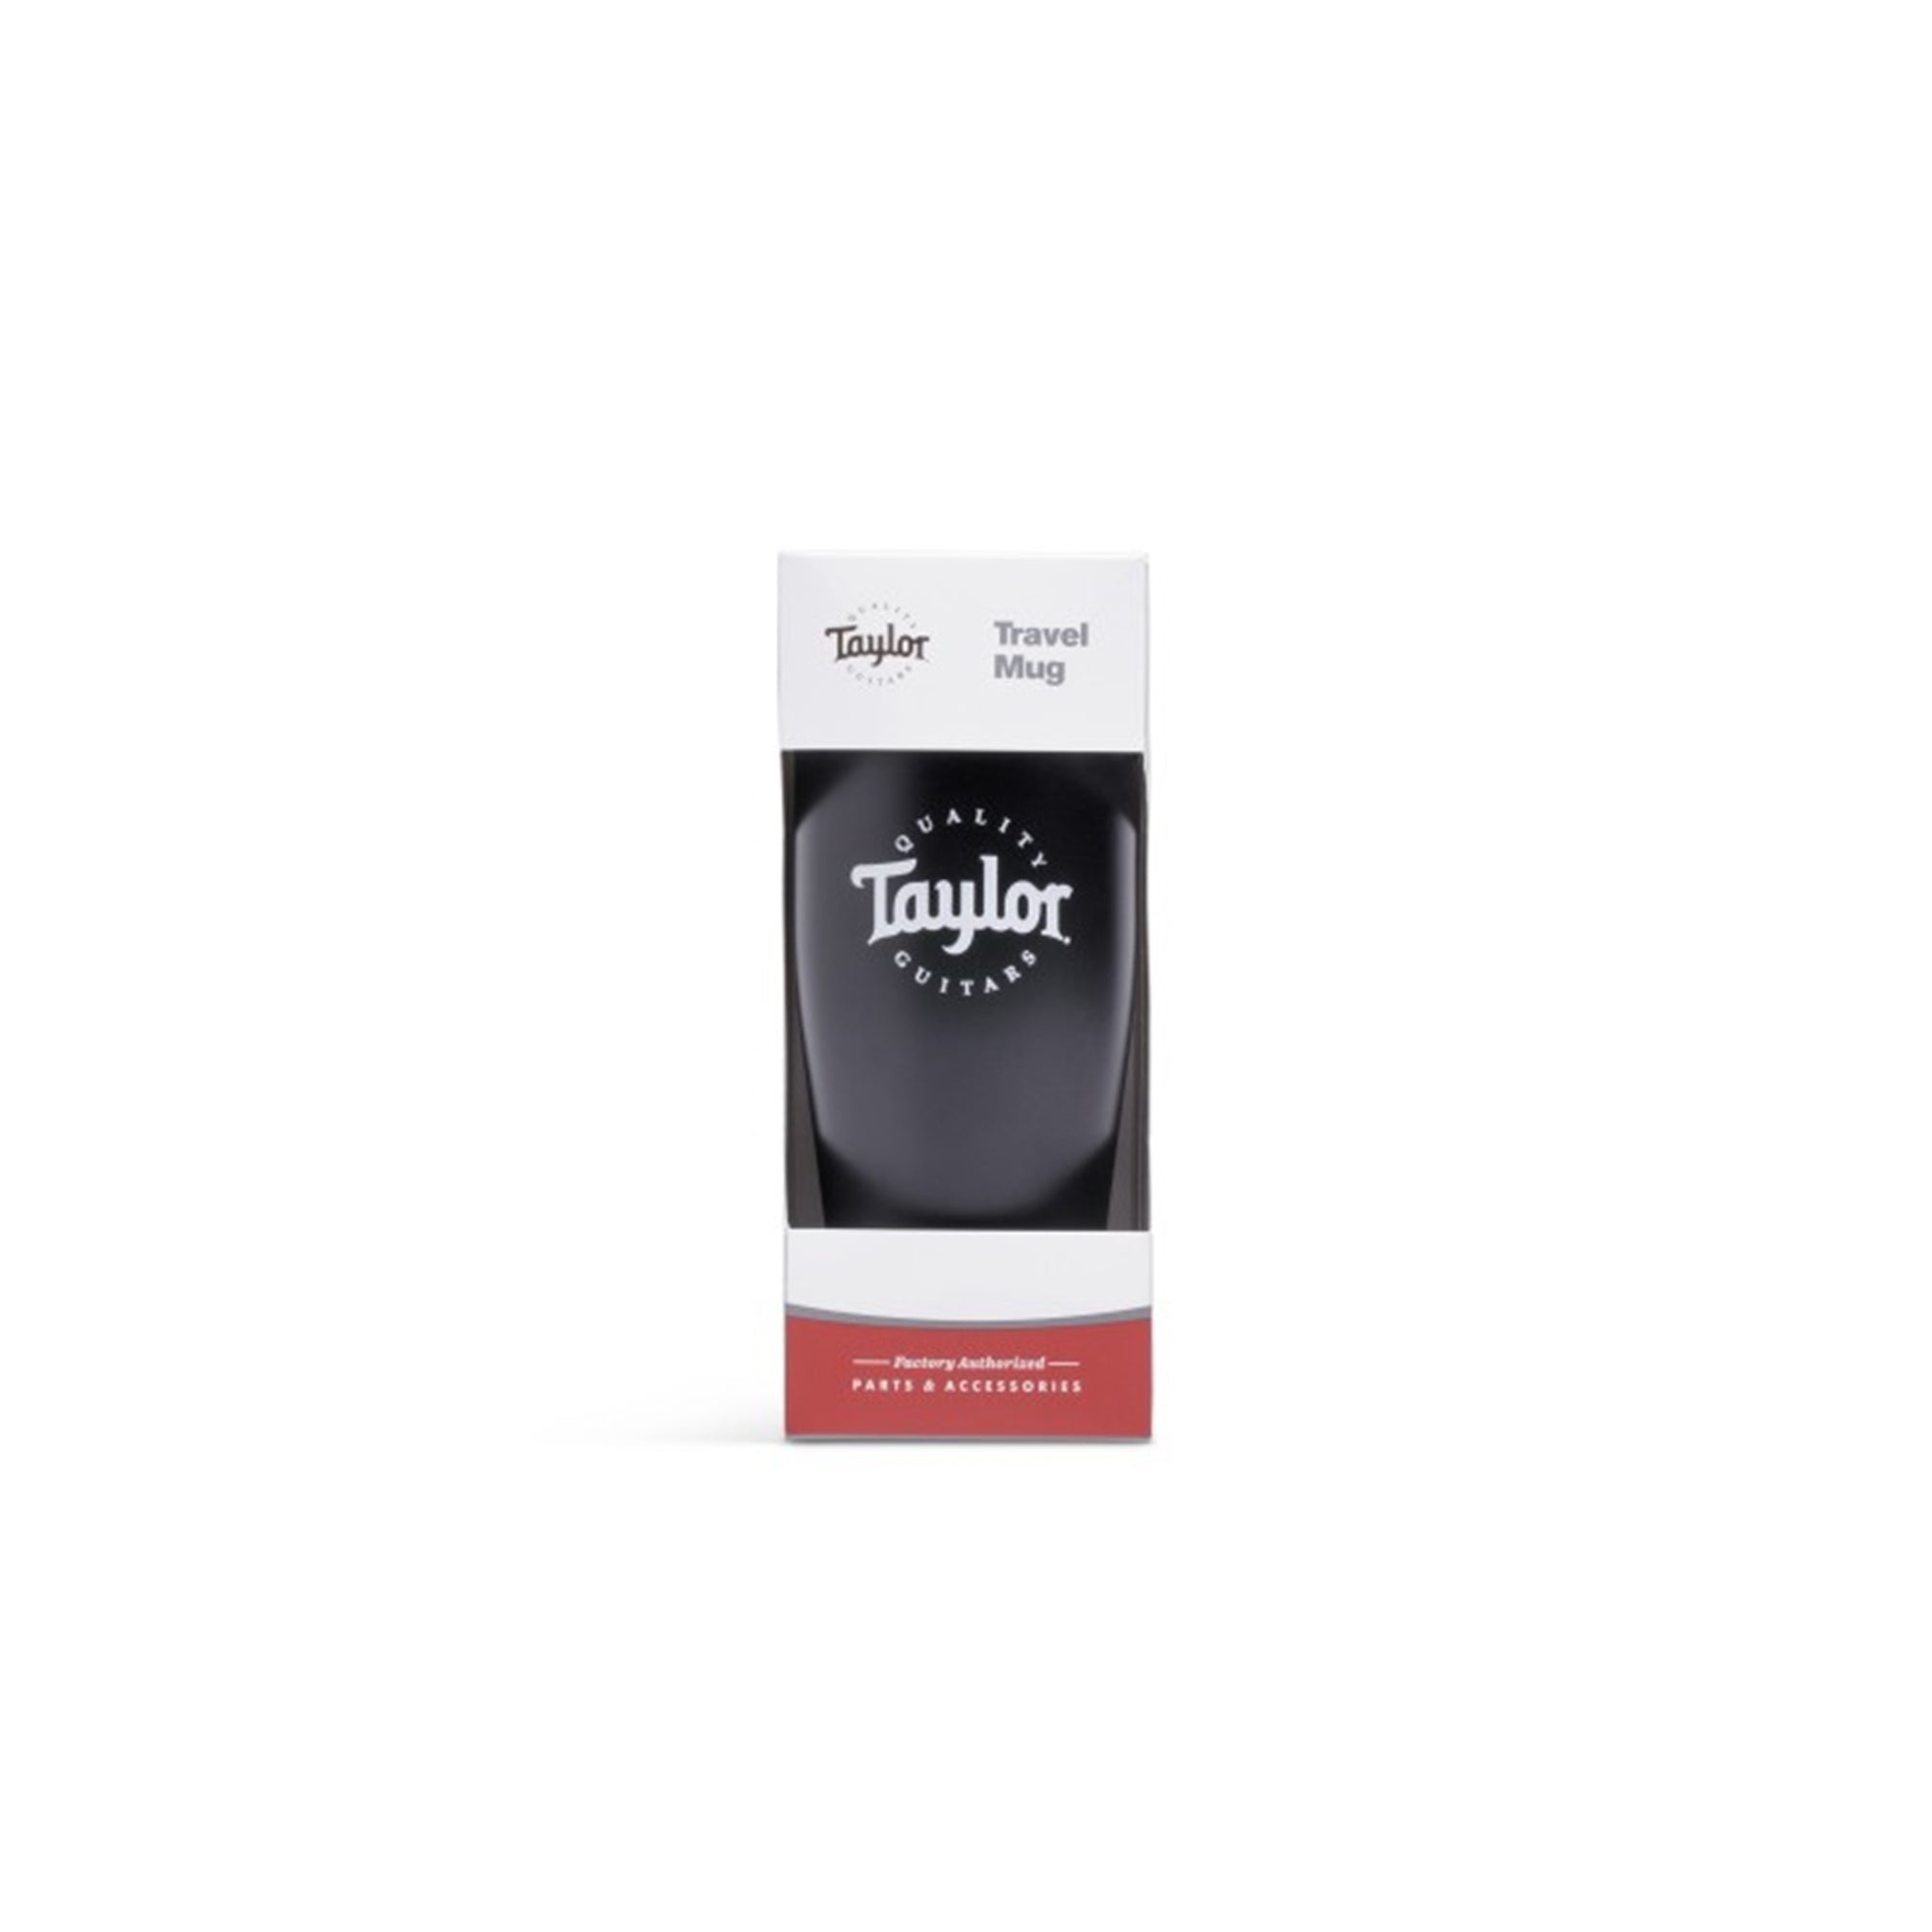 Taylor 1521 Travel Coffee Mug, Black, White Logo,20oz